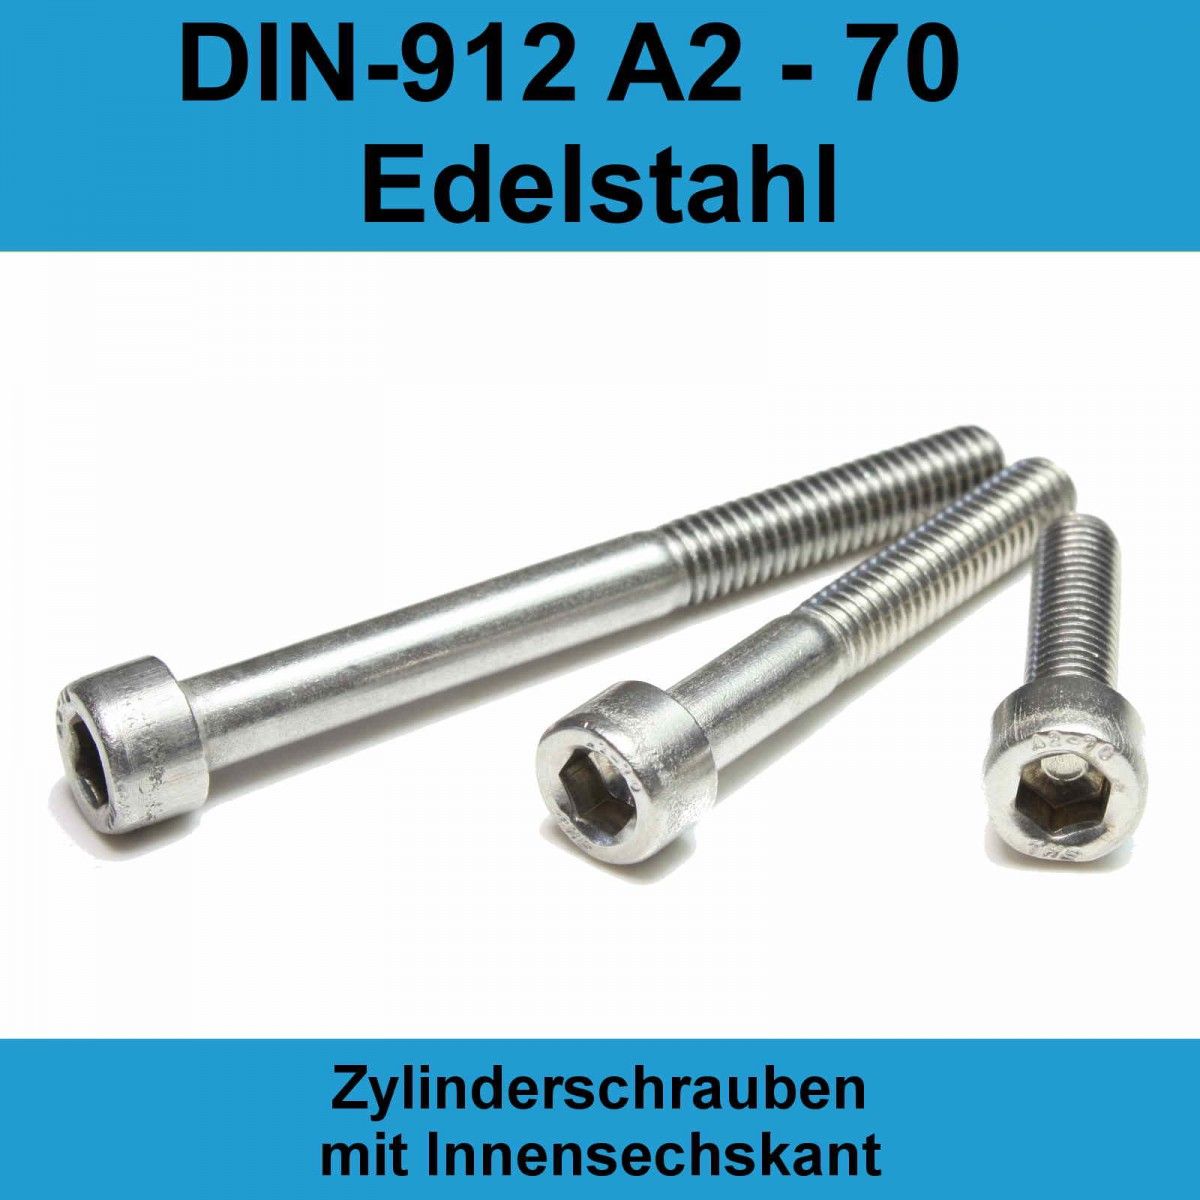 M8 DIN 912 A2 - 70 Zylinderschrauben mit Innensechskant